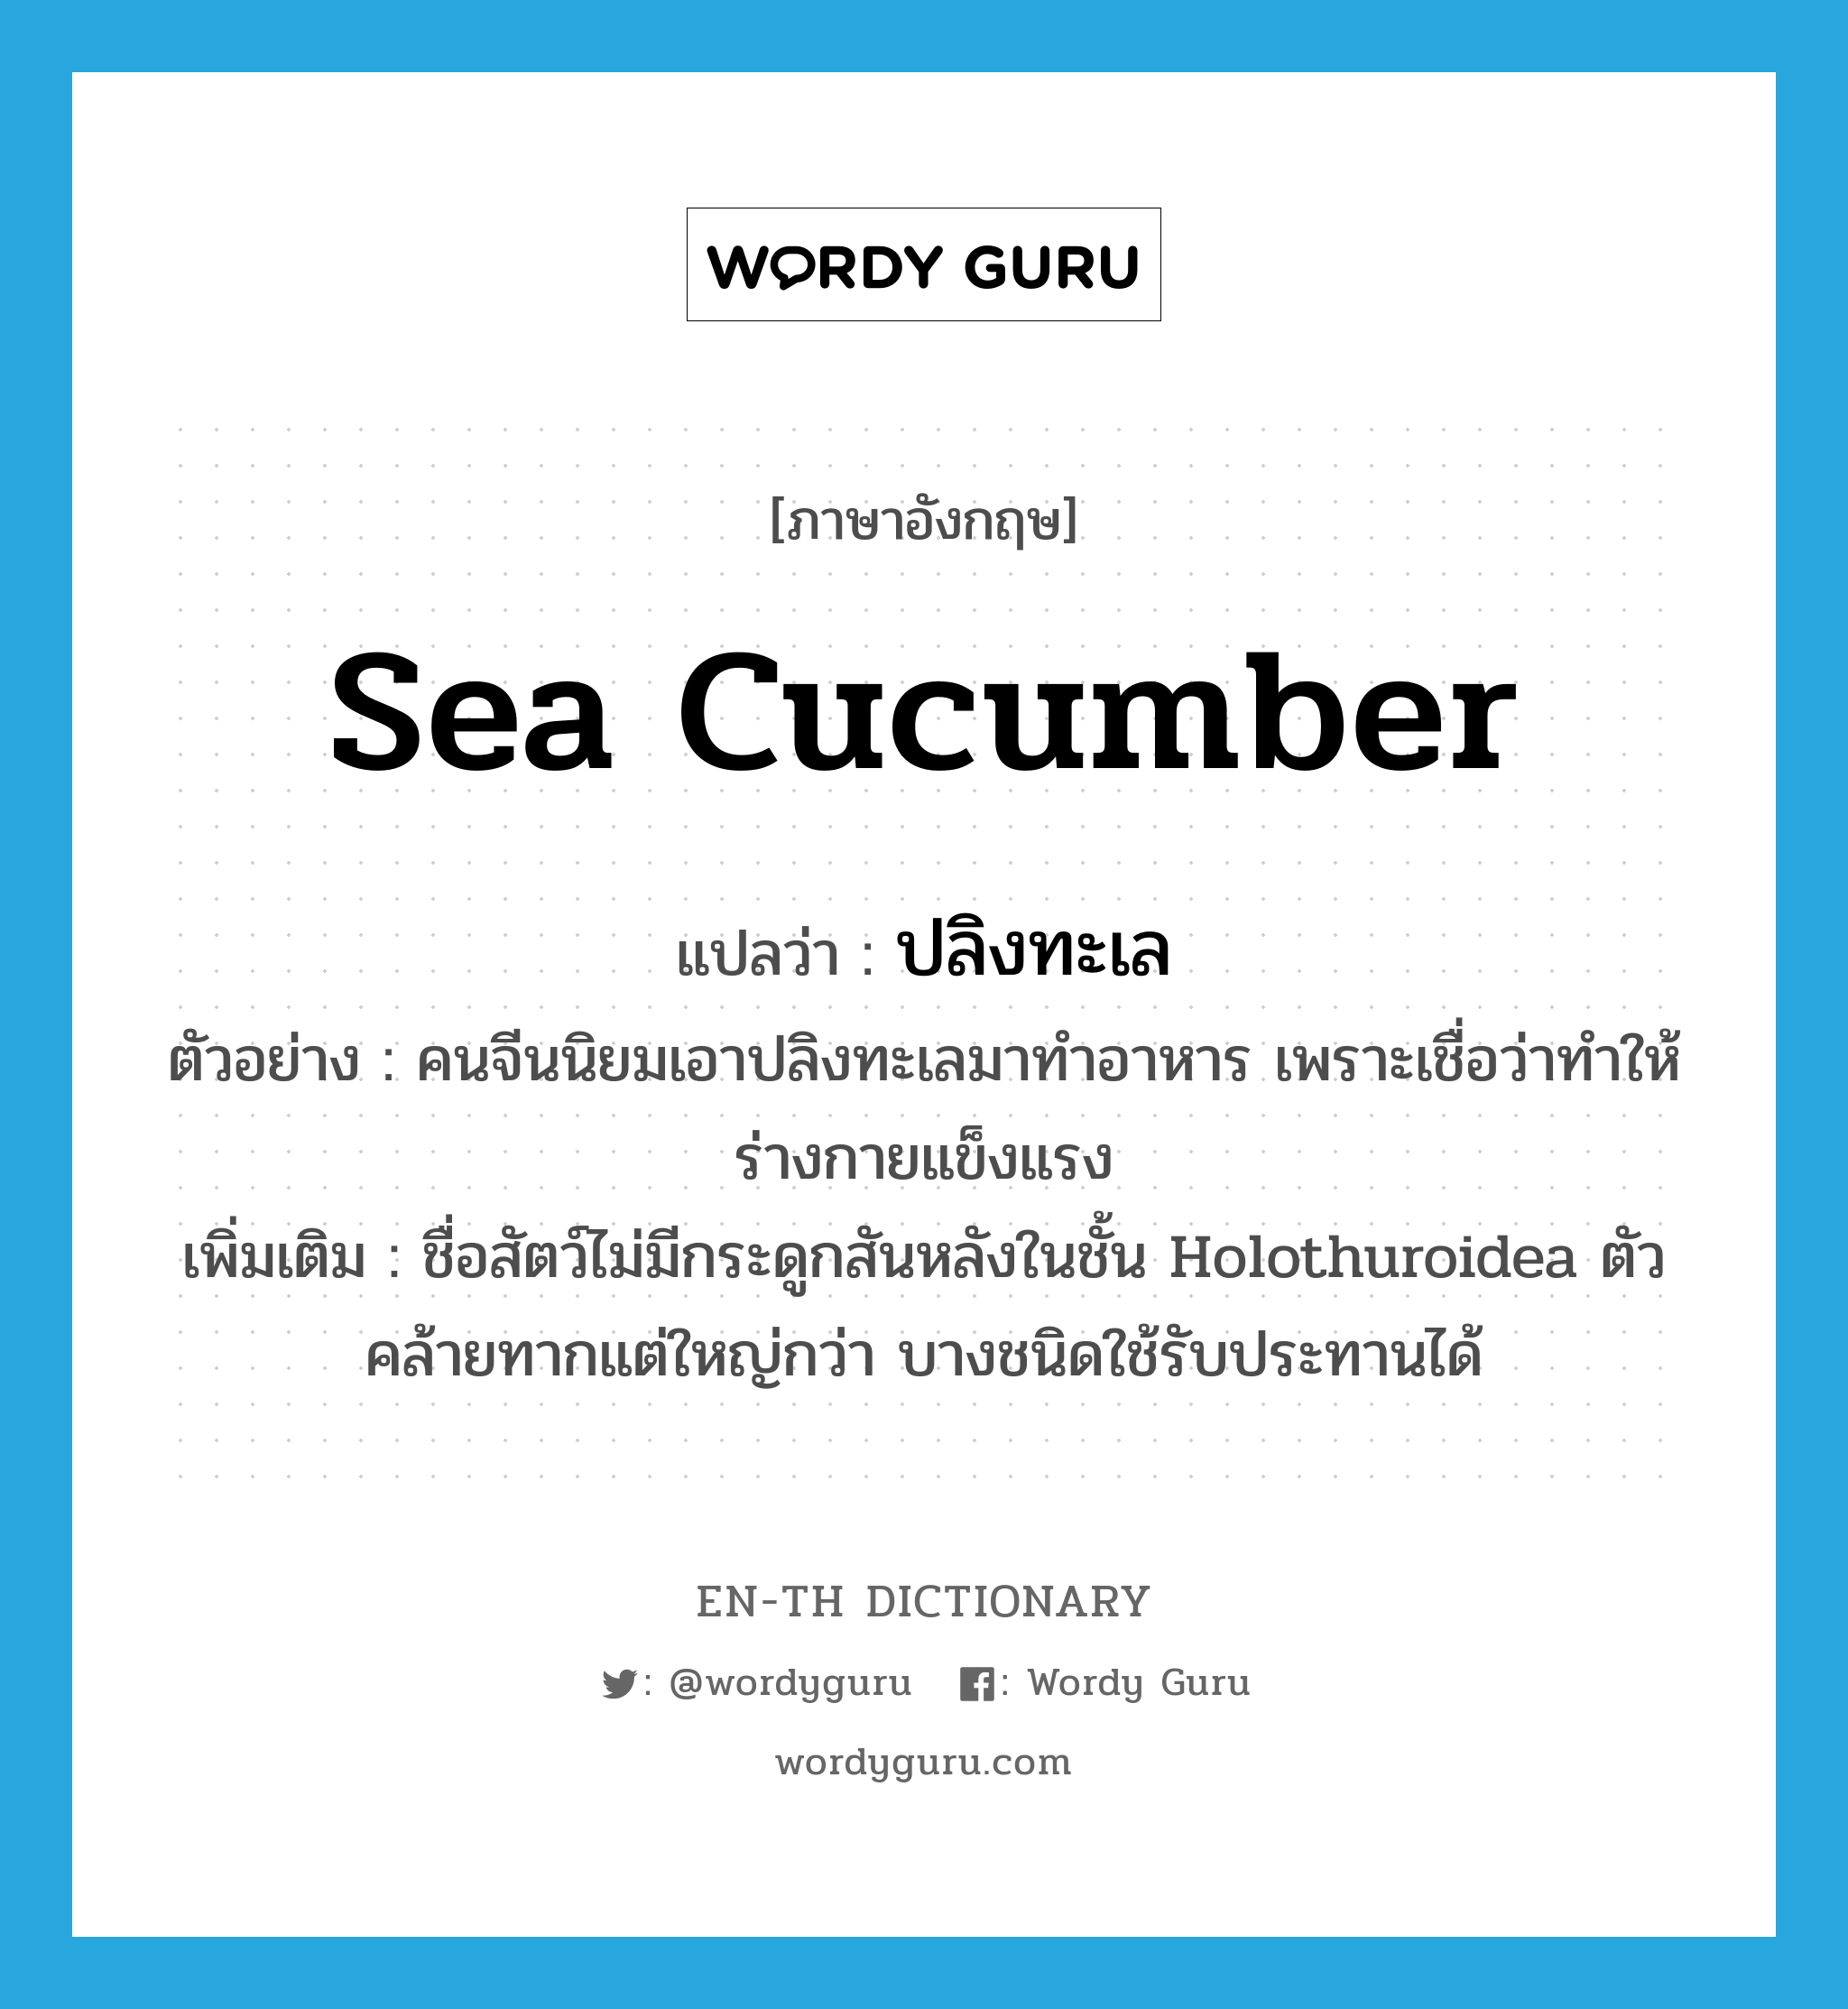 ปลิงทะเล ภาษาอังกฤษ?, คำศัพท์ภาษาอังกฤษ ปลิงทะเล แปลว่า sea cucumber ประเภท N ตัวอย่าง คนจีนนิยมเอาปลิงทะเลมาทำอาหาร เพราะเชื่อว่าทำให้ร่างกายแข็งแรง เพิ่มเติม ชื่อสัตว์ไม่มีกระดูกสันหลังในชั้น Holothuroidea ตัวคล้ายทากแต่ใหญ่กว่า บางชนิดใช้รับประทานได้ หมวด N